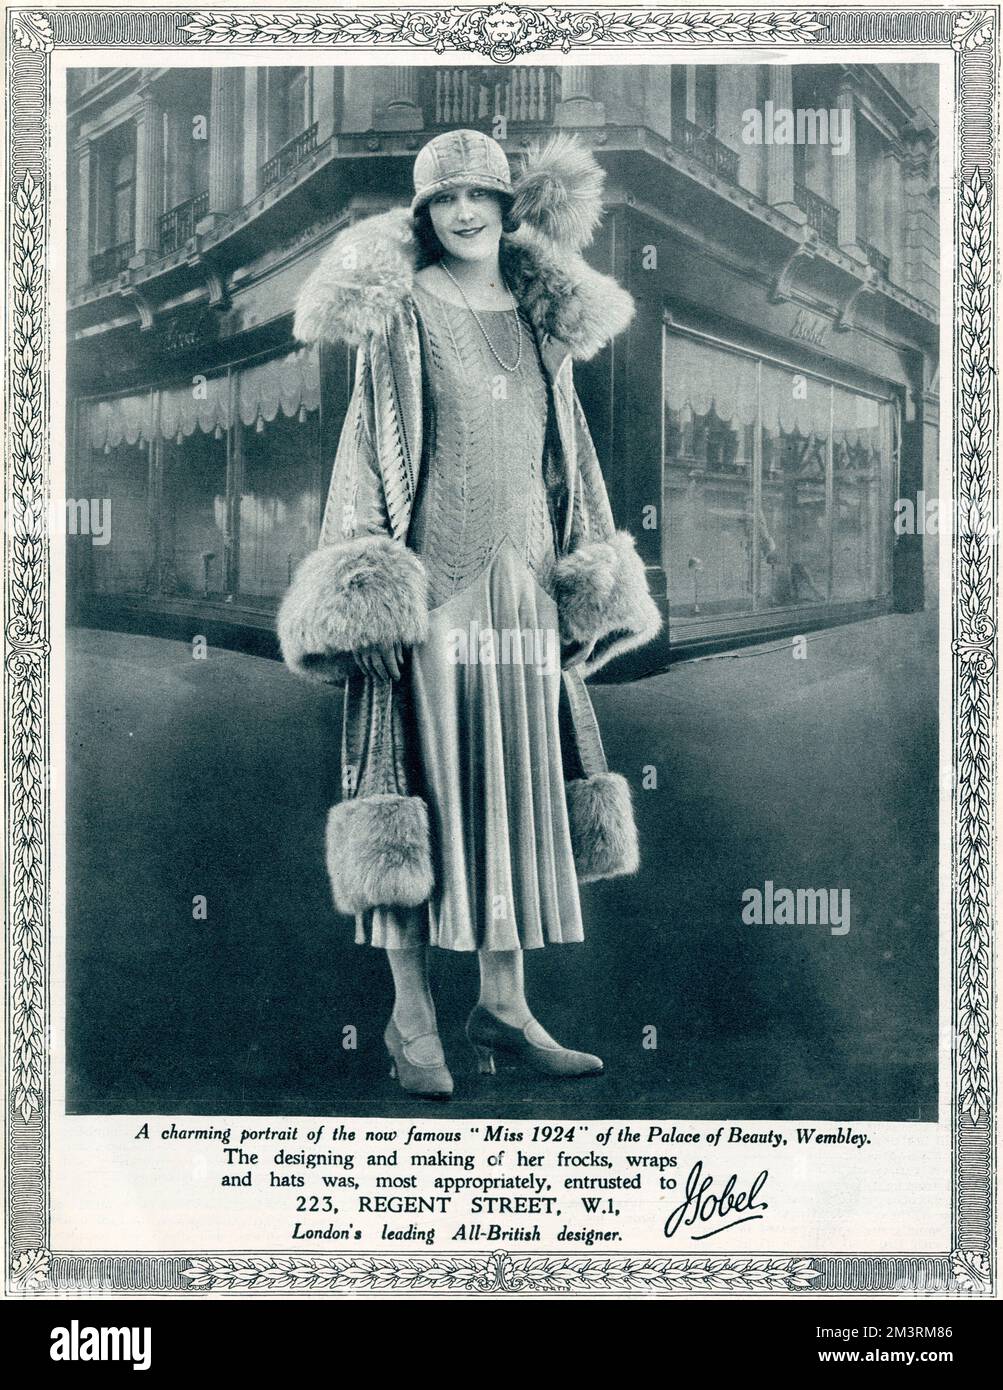 Publicité pour la maison de mode, Isobel, sur Regent Street à Londres, célèbre pour ses vitrines de magasins à la fois élégantes et grises. Posé en face de la boutique est Miss 1924 du Palais de la Beauté à Wembley, dont toute la garde-robe a été fournie par Isobel. Isobel était un grand favori parmi la haute société, en particulier pour les robes de court et les tenues de la saison de Londres. 1924 Banque D'Images